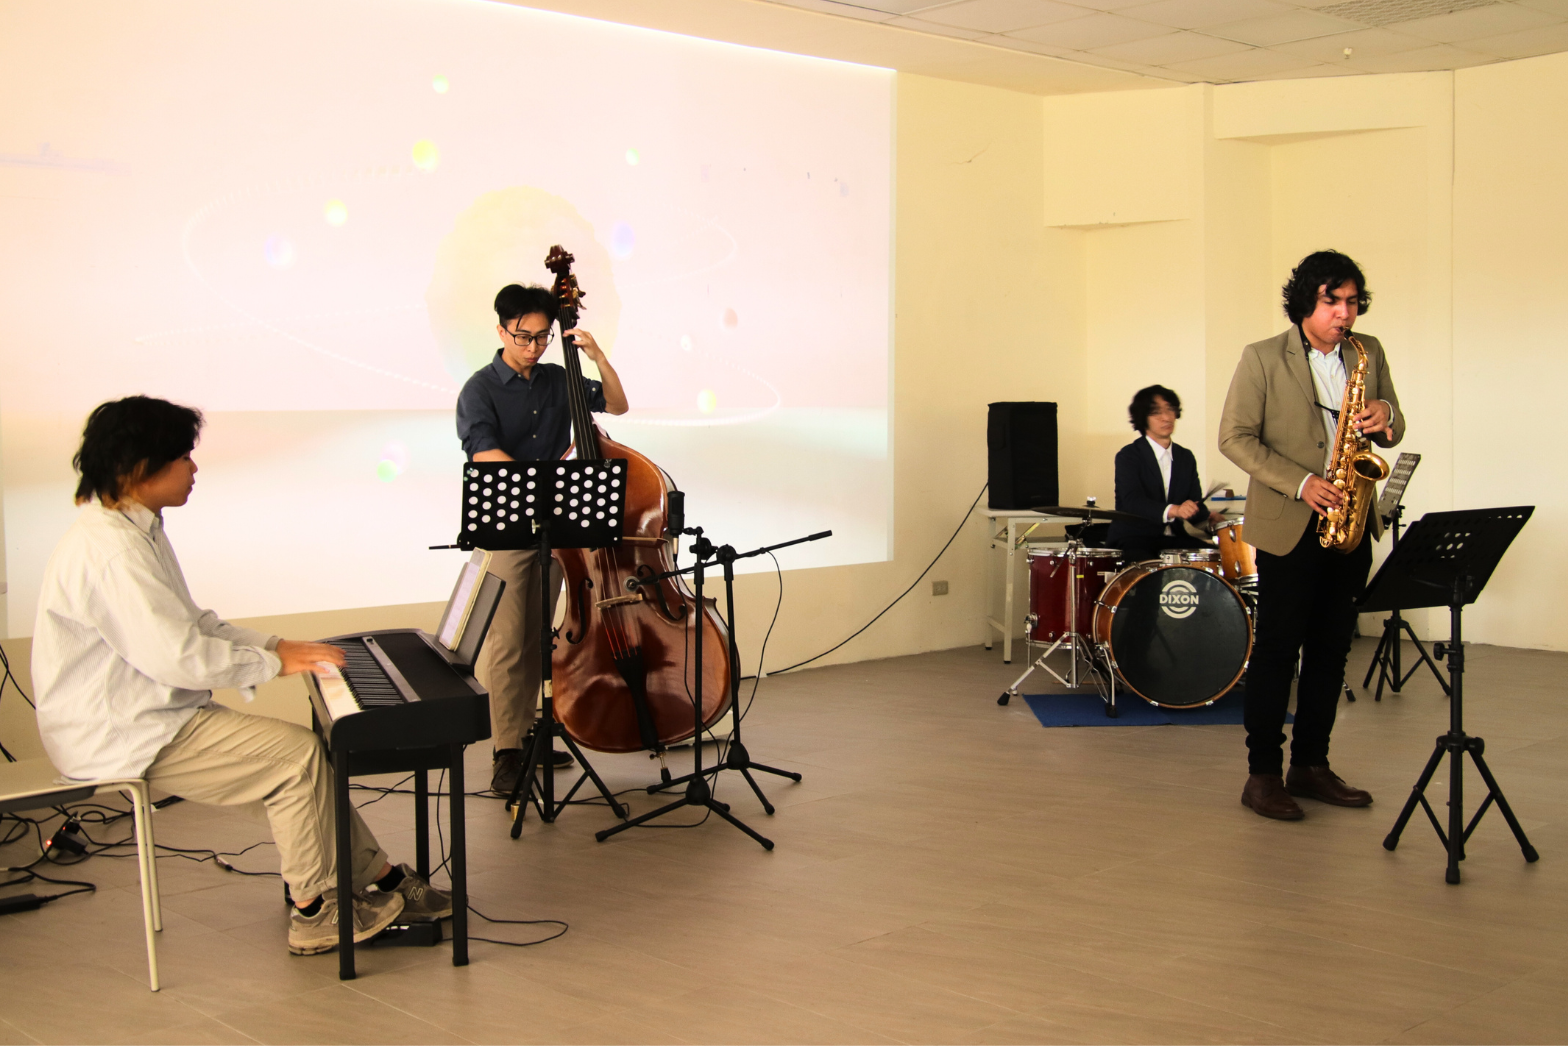 「無盡之始」開幕茶會中，邀請爵士樂社結合livecoding技術的現場演奏。照片游佳霖攝